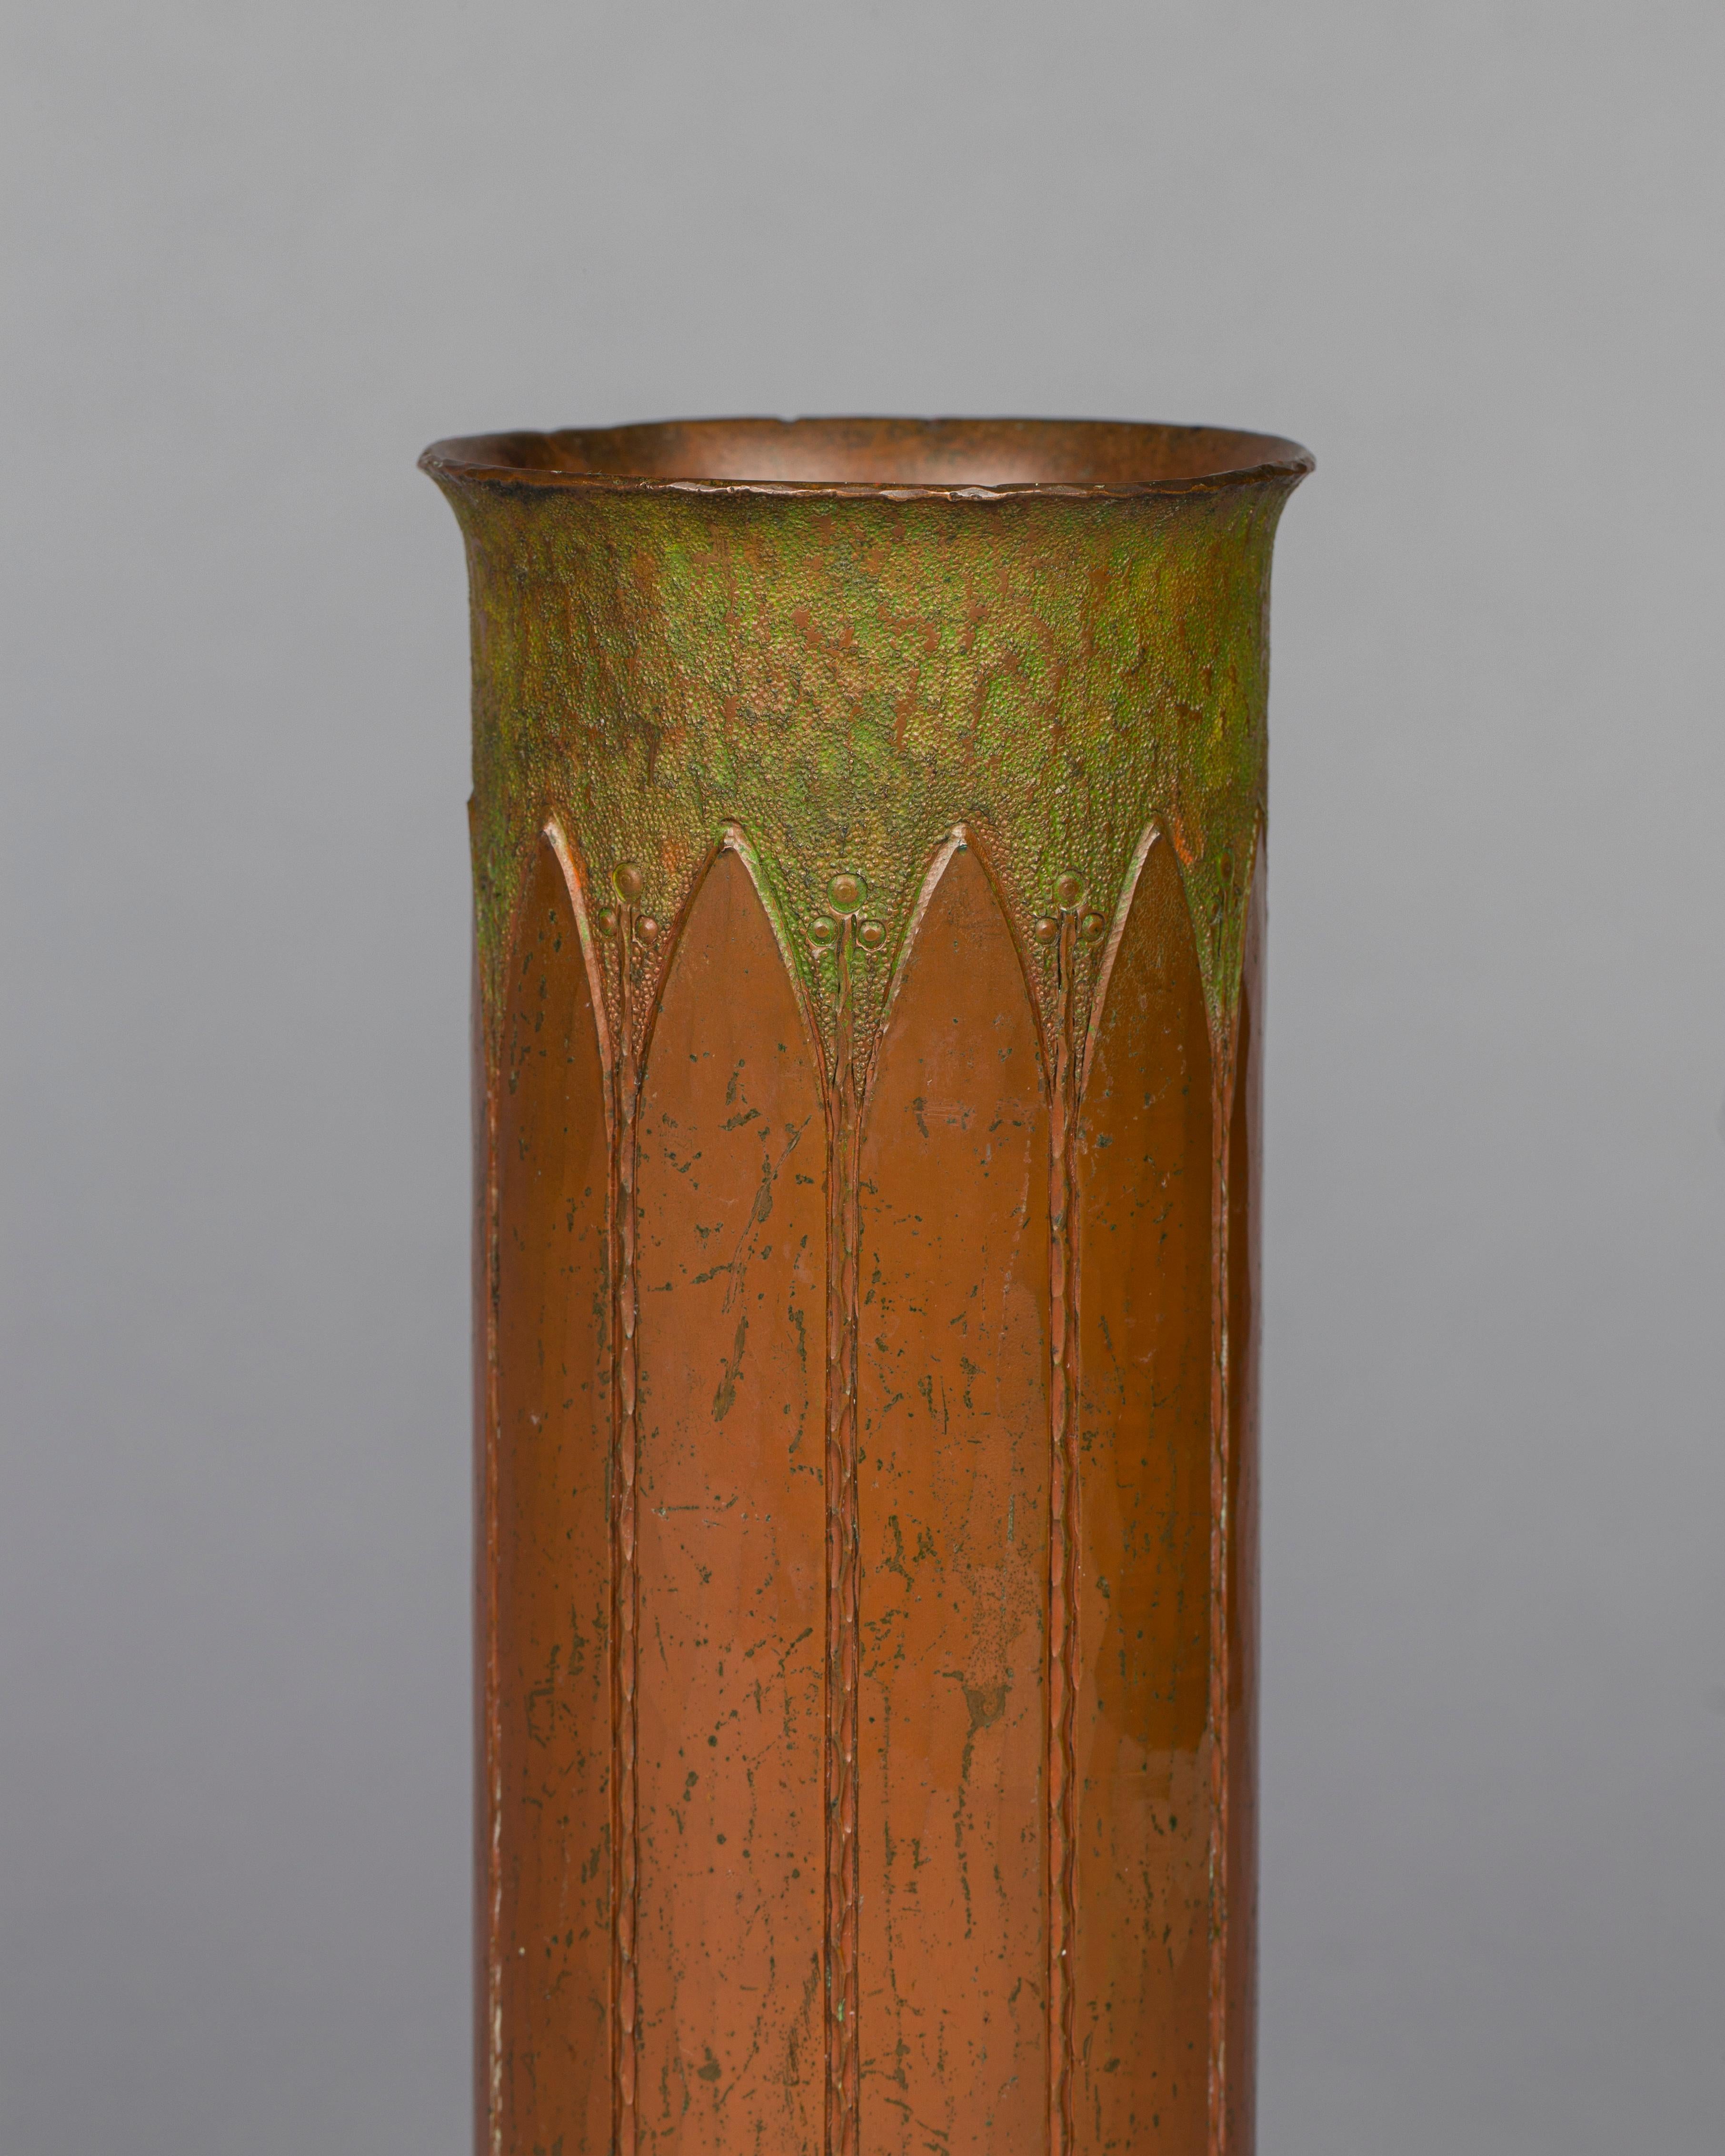 Roycroft
Rare vase cylindrique en cuivre martelé, incisé de feuilles en longueur alternant avec des feuilles en forme d'étoile.
bourgeons sous un plateau martelé patiné par le vert-de-gris, vers 1910-1915
Design/One par Walter Jennings
Orbe et